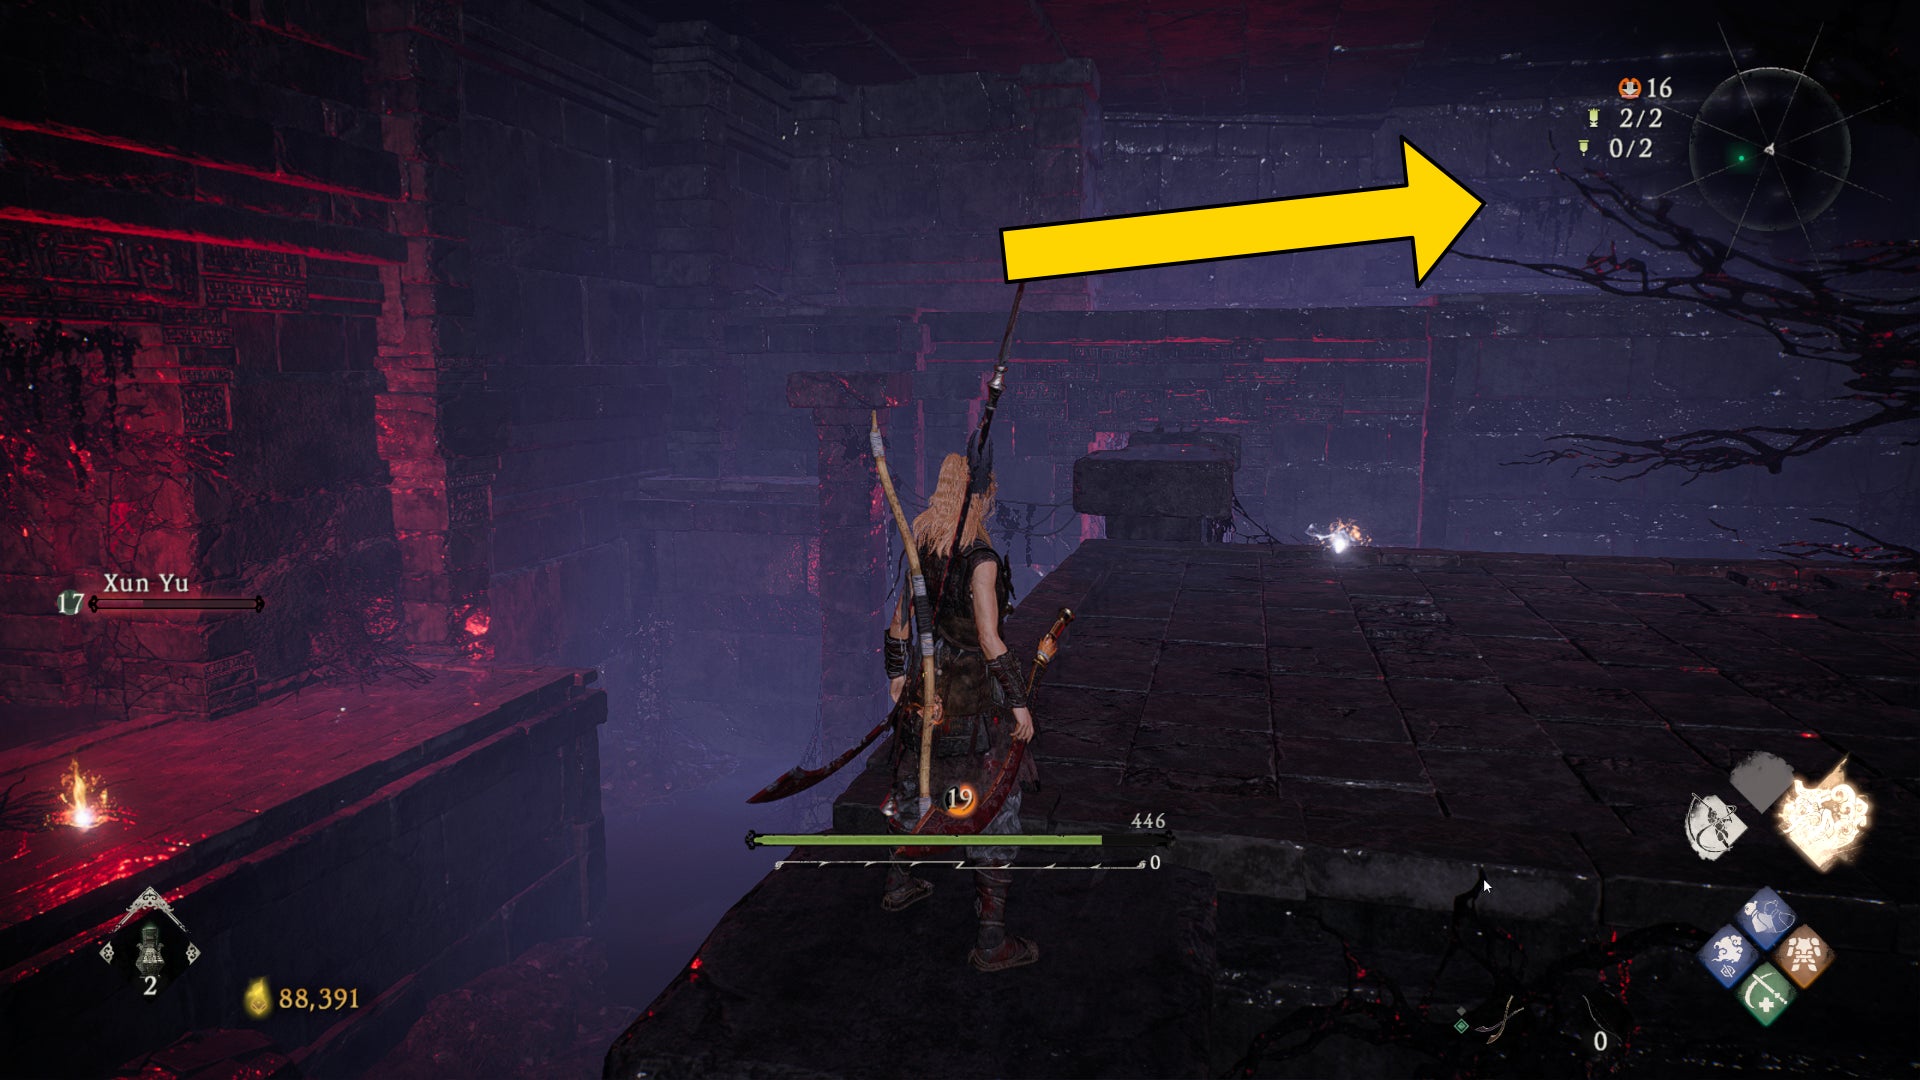 El jugador de Wo Long se para sobre una plataforma elevada en el centro de una habitación subterránea.  Una flecha apunta a la ubicación de un Shitieshou cercano.